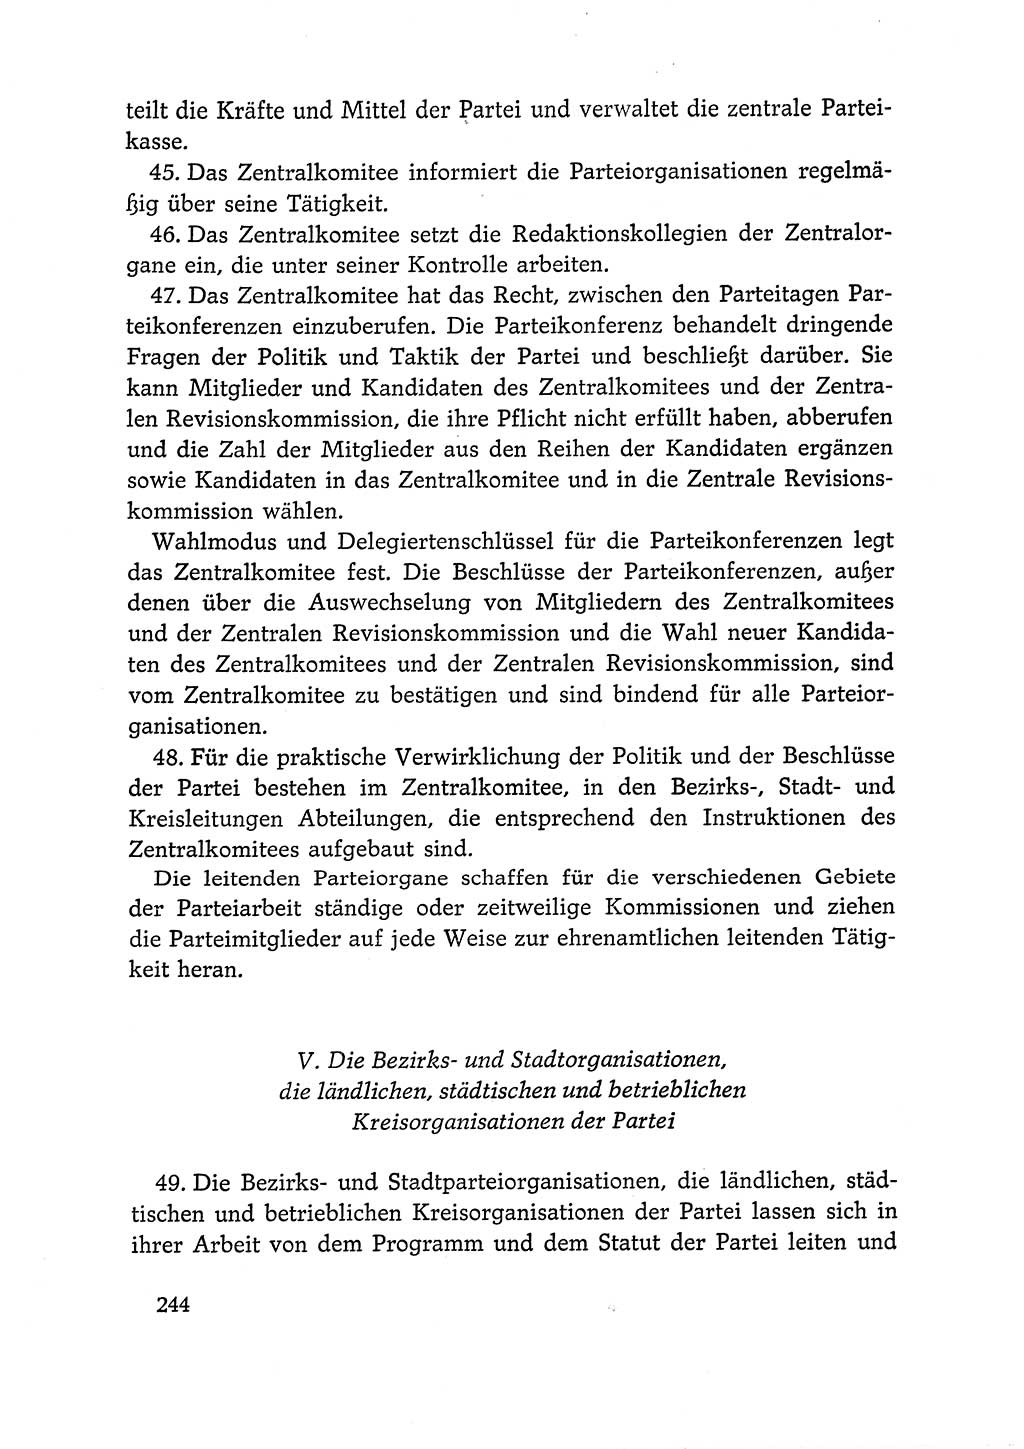 Dokumente der Sozialistischen Einheitspartei Deutschlands (SED) [Deutsche Demokratische Republik (DDR)] 1966-1967, Seite 244 (Dok. SED DDR 1966-1967, S. 244)